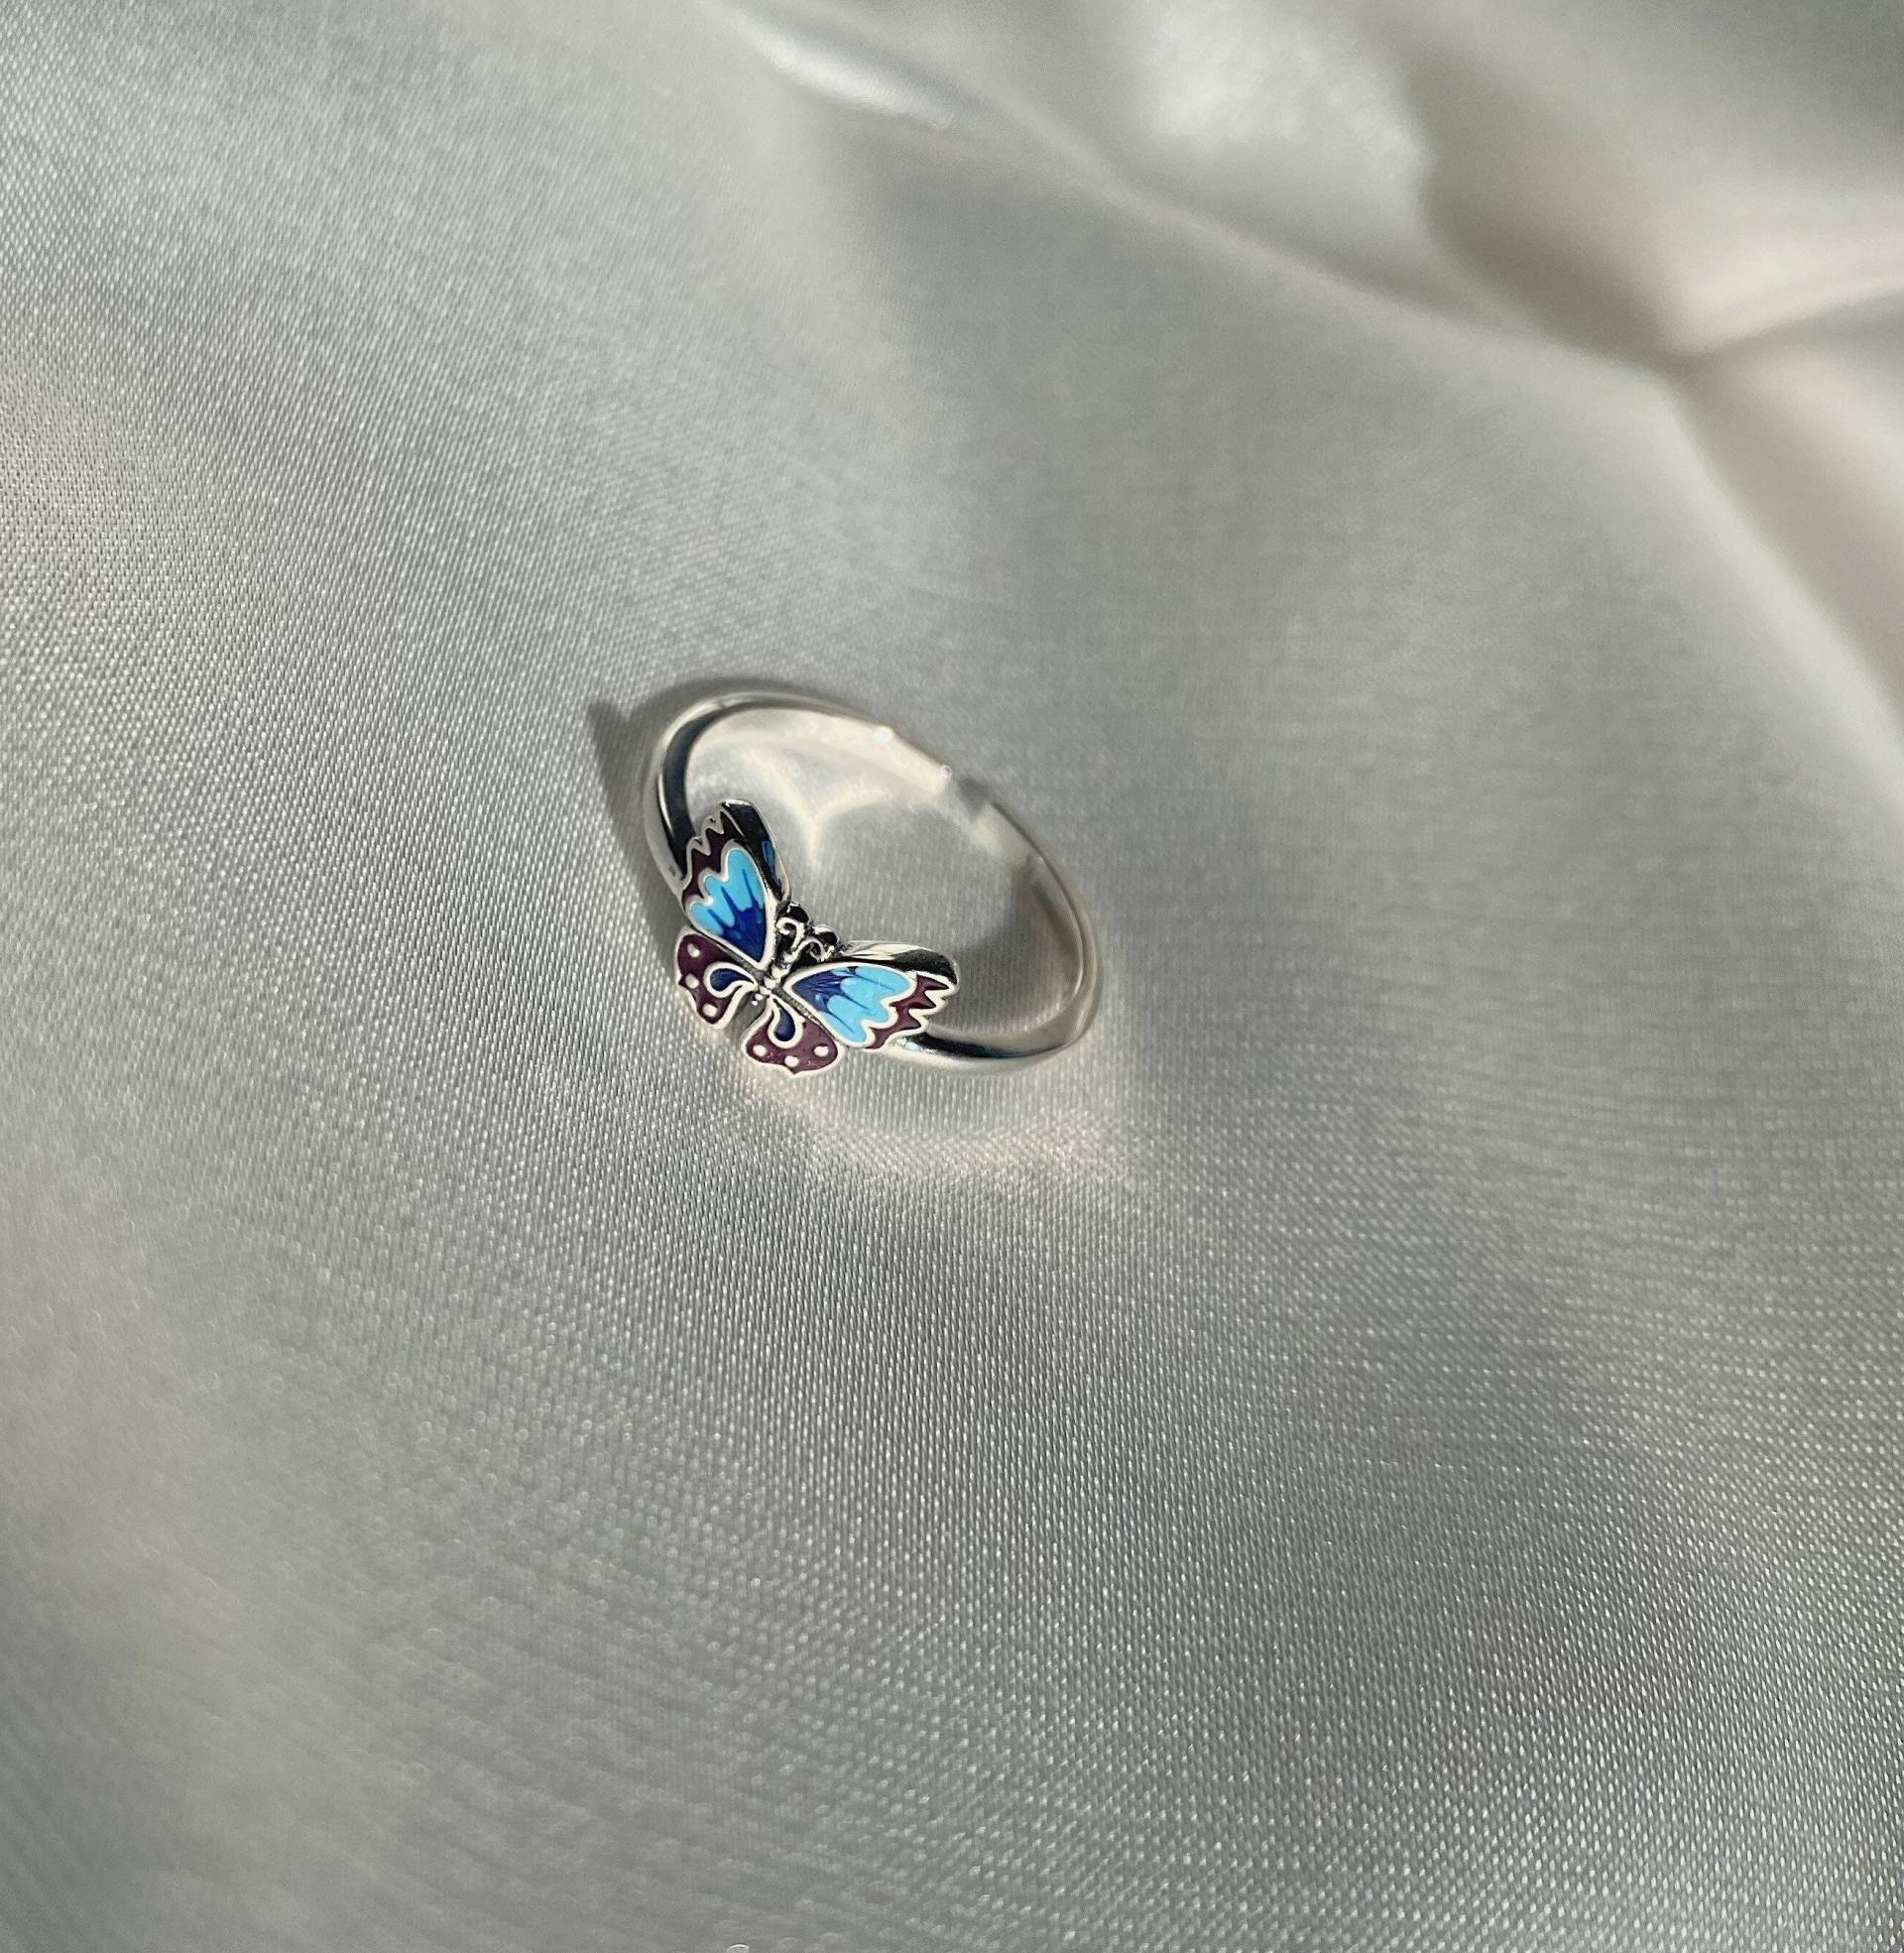 Blau Silber Schmetterling Ring Verstellbarer Einzigartiges Design Schöne Nette Schmuck Jahrestag Geburtstag Geschenk Ringe Für Frauen von Jensshop68